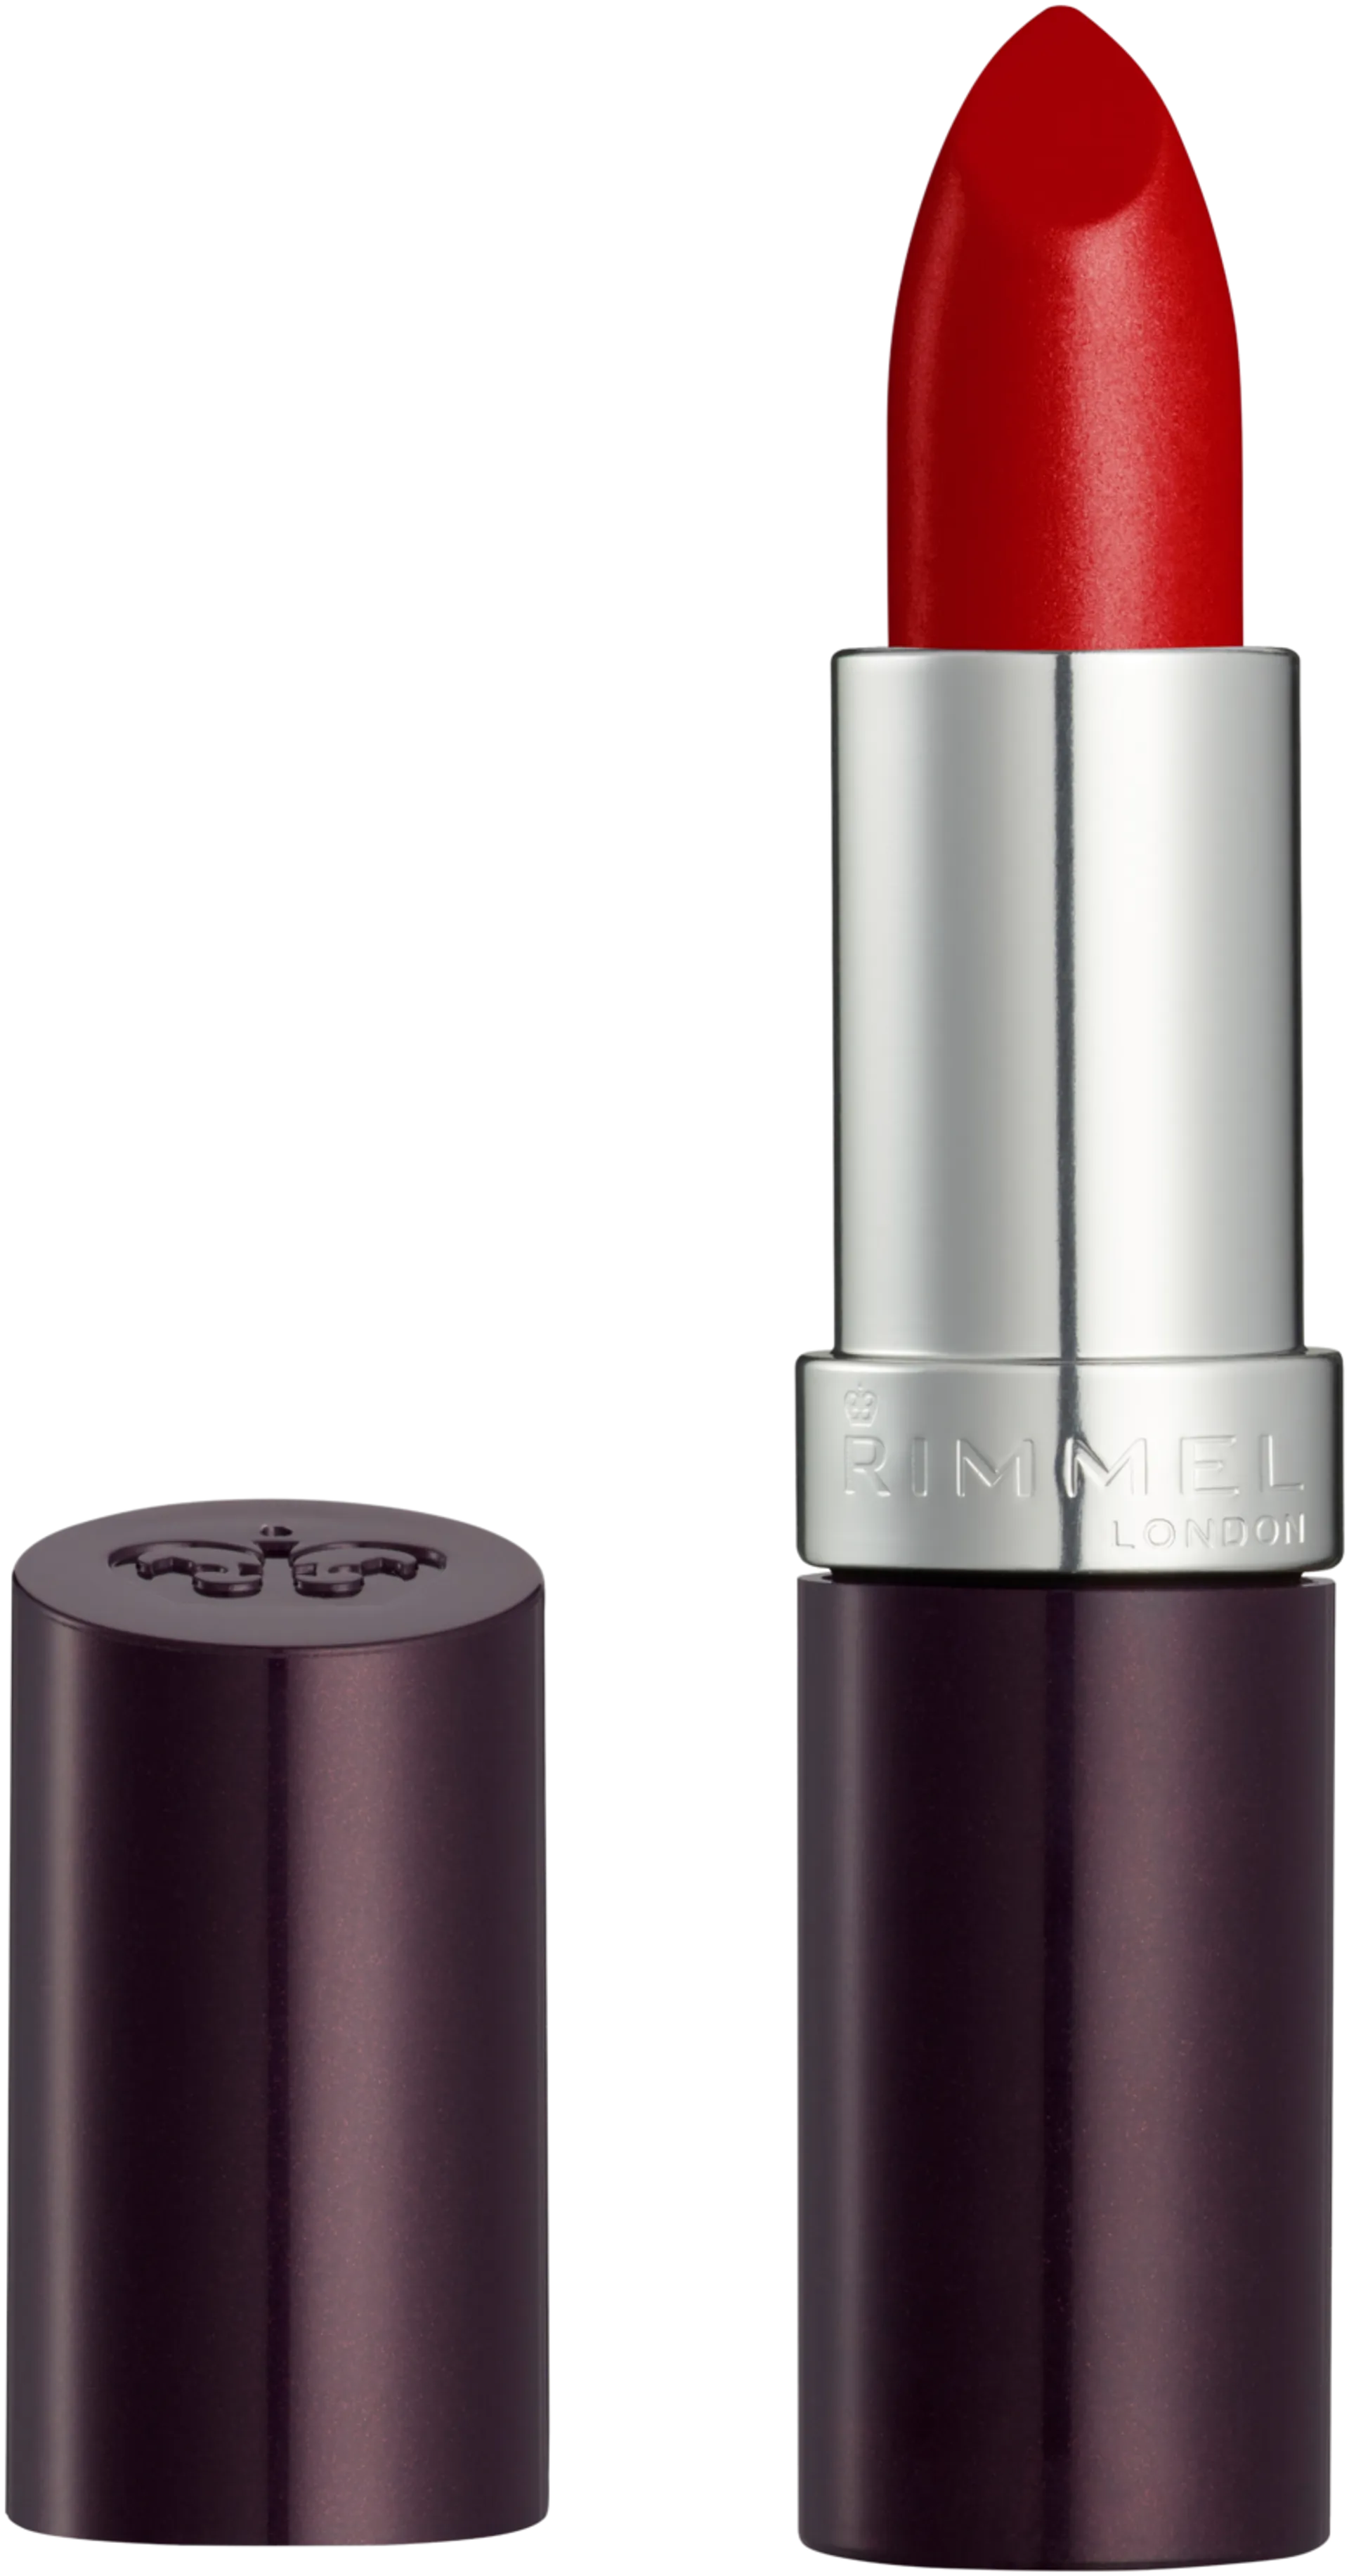 Rimmel 4g Lasting Finish Lipstick 170 Alarm huulipuna - 1